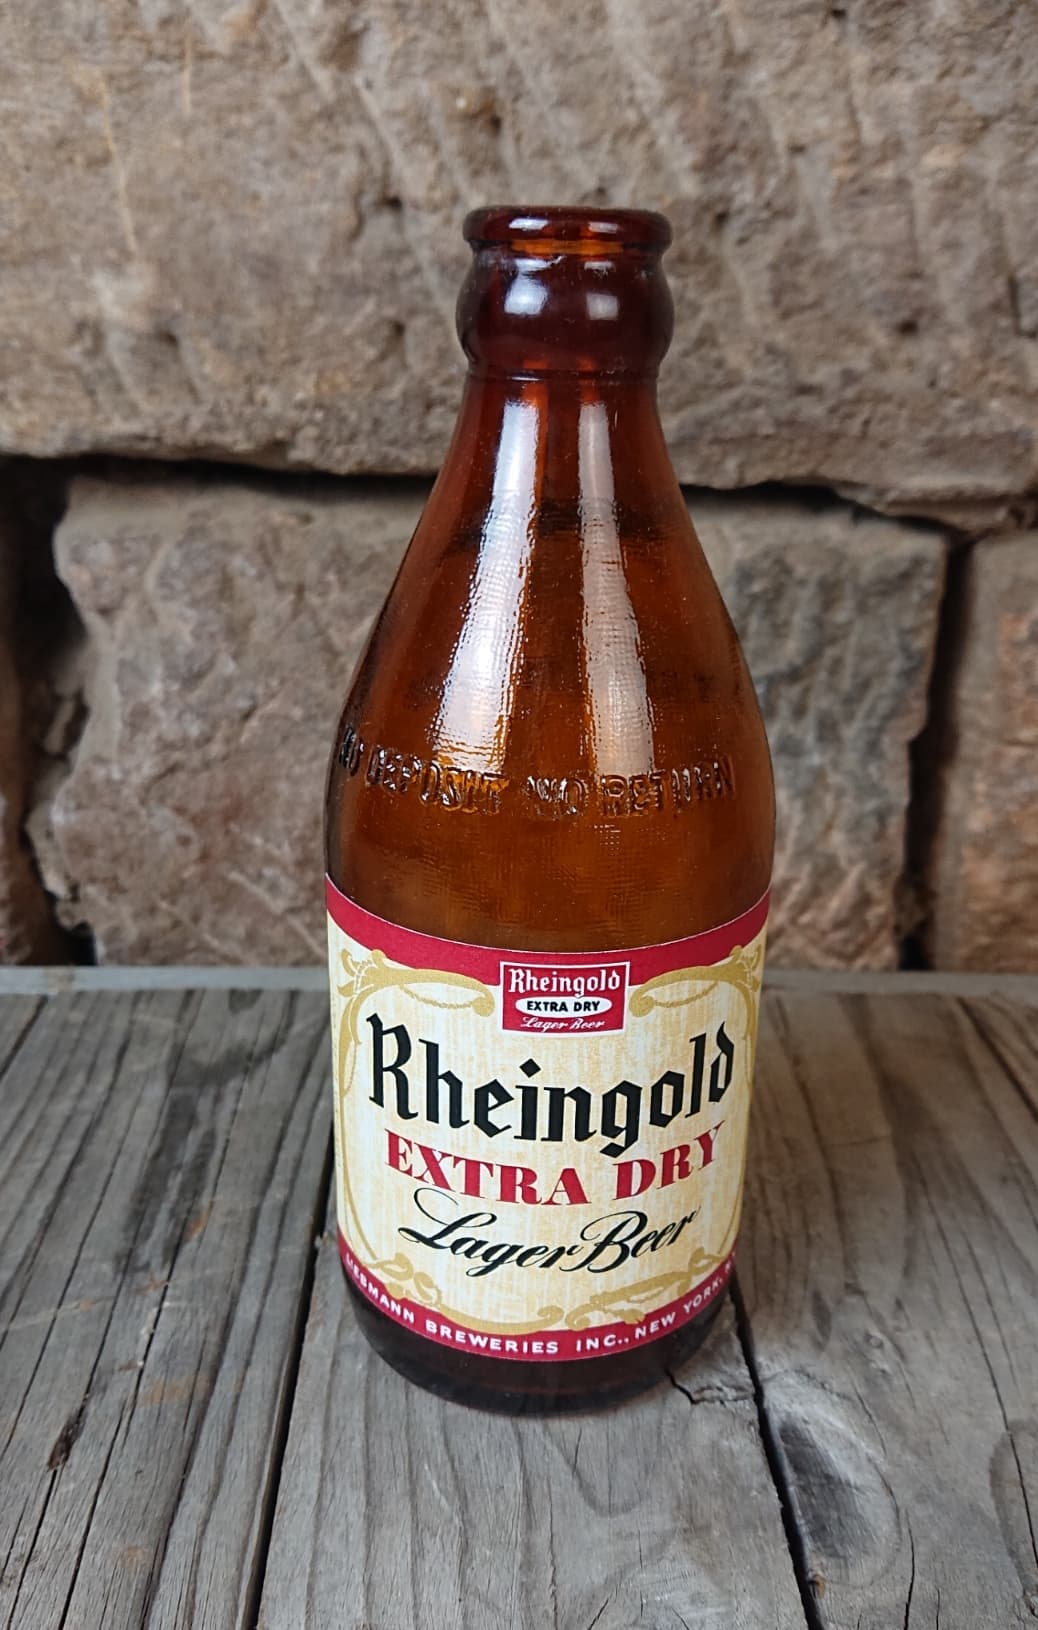 militaria : Bouteille de bière US Rheingold / US Rheingold beer bottle